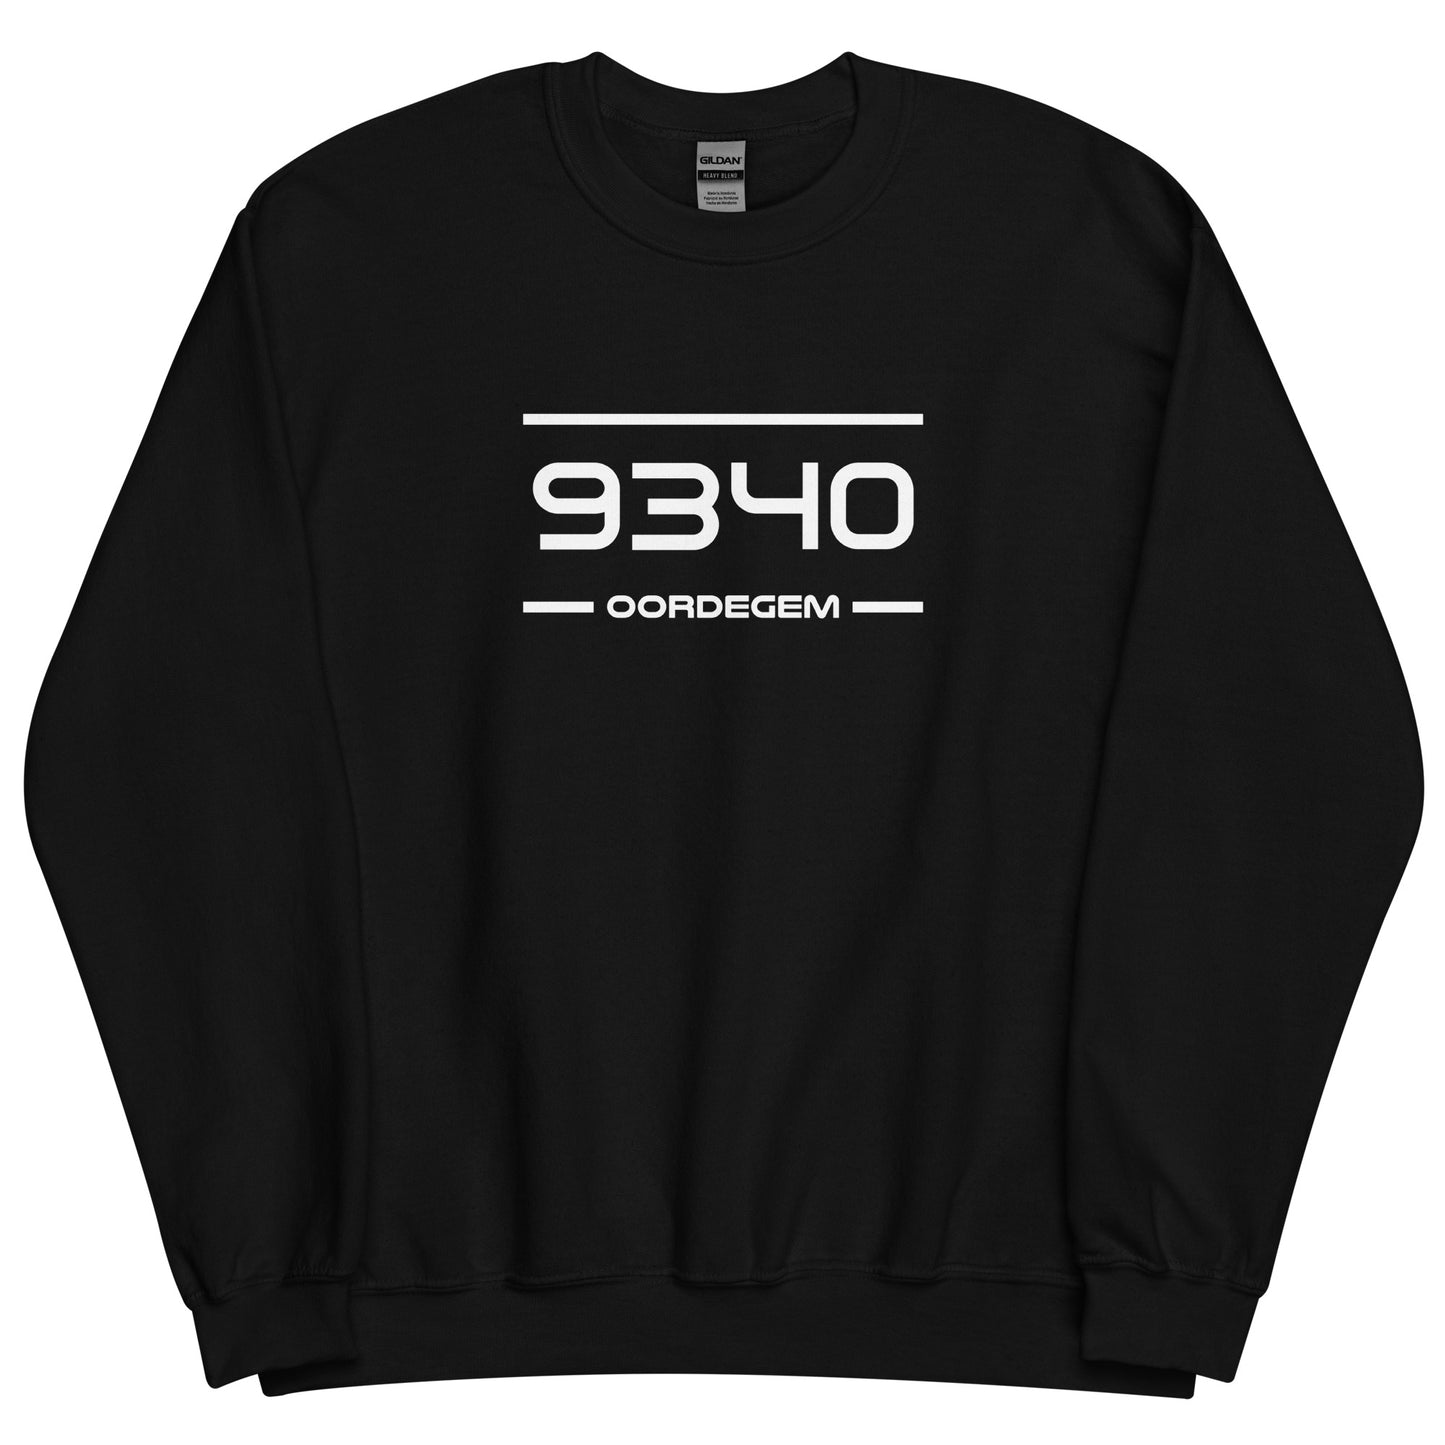 Sweater - 9340 - Oordegem (M/V)